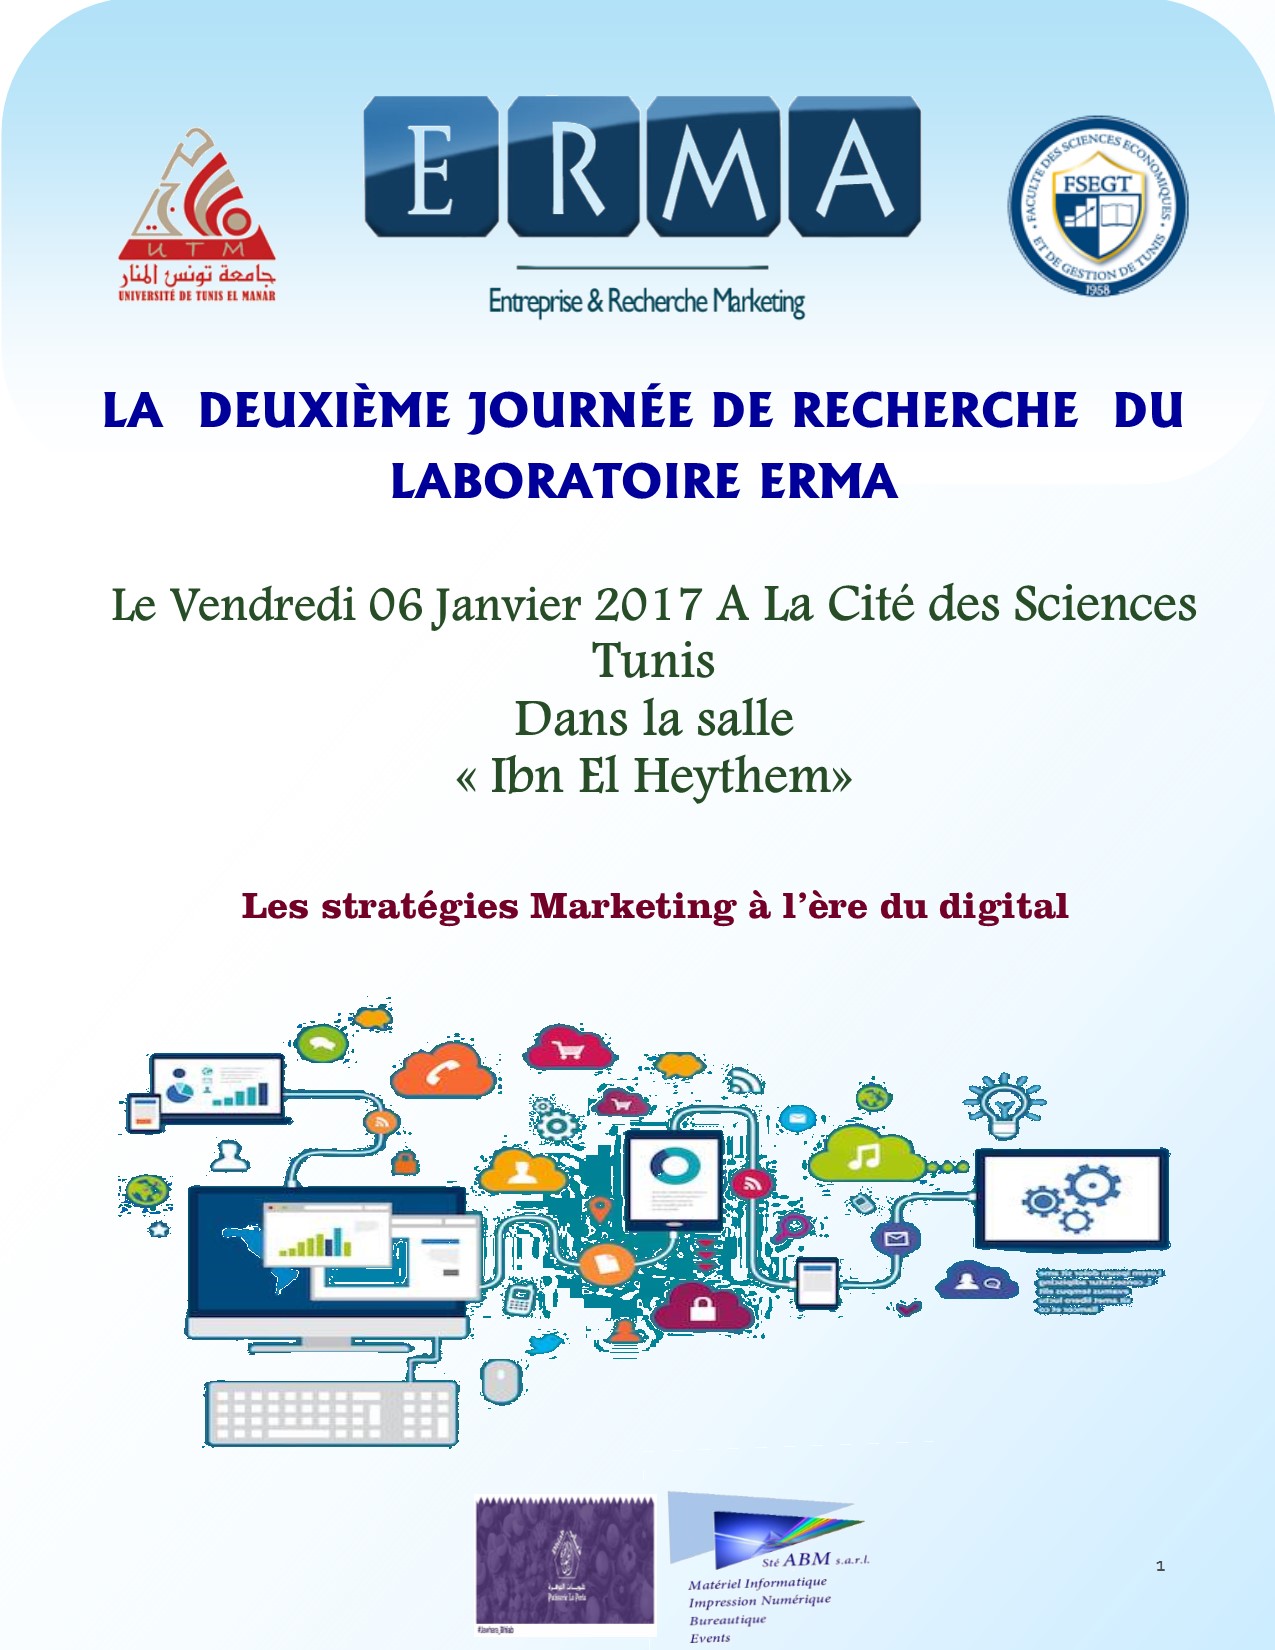 2 ème Journée de Recherche du Laboratoire ERMA le 06 Janvier 2017